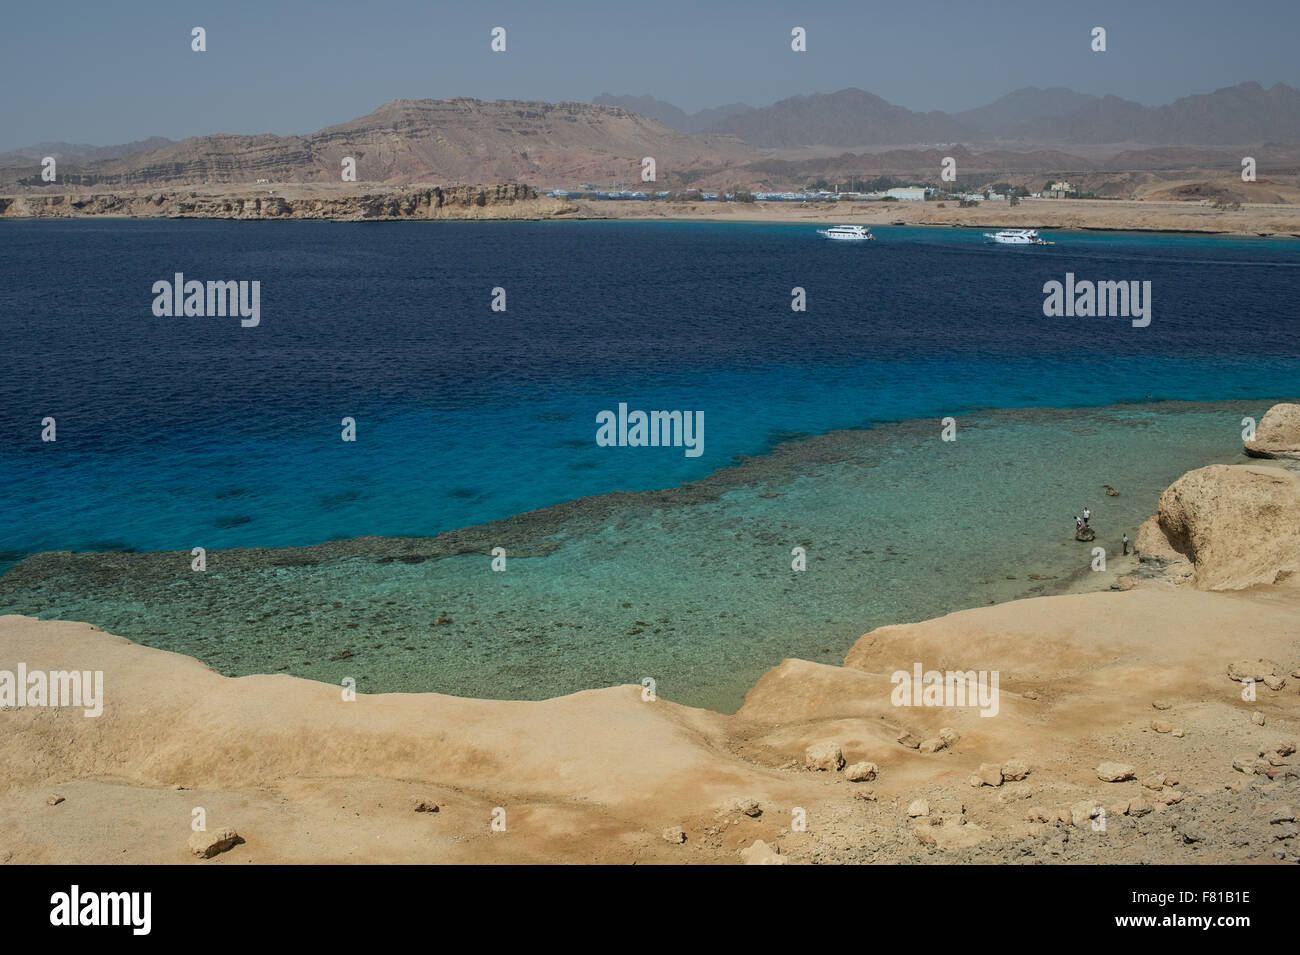 La costa e la barriera corallina di Sharm el-Sheikh, Mar Rosso, Egitto Foto Stock